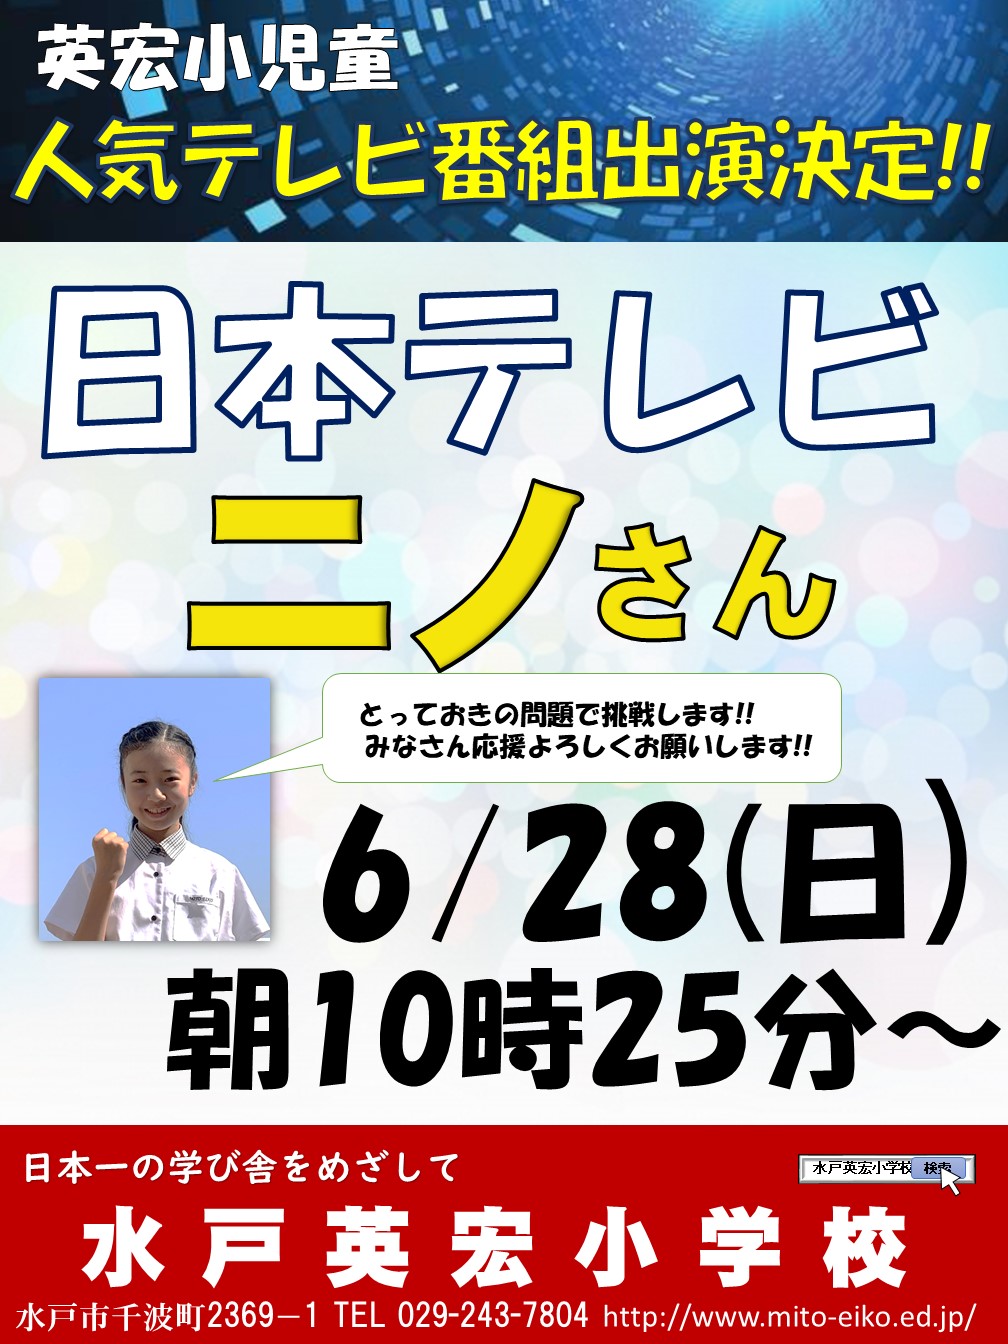 日本テレビの人気番組「ニノさん」に本校児童が出演することが決定しました！知力育成に特化した学校として紹介され、学校代表として４年生の児童が出演します。